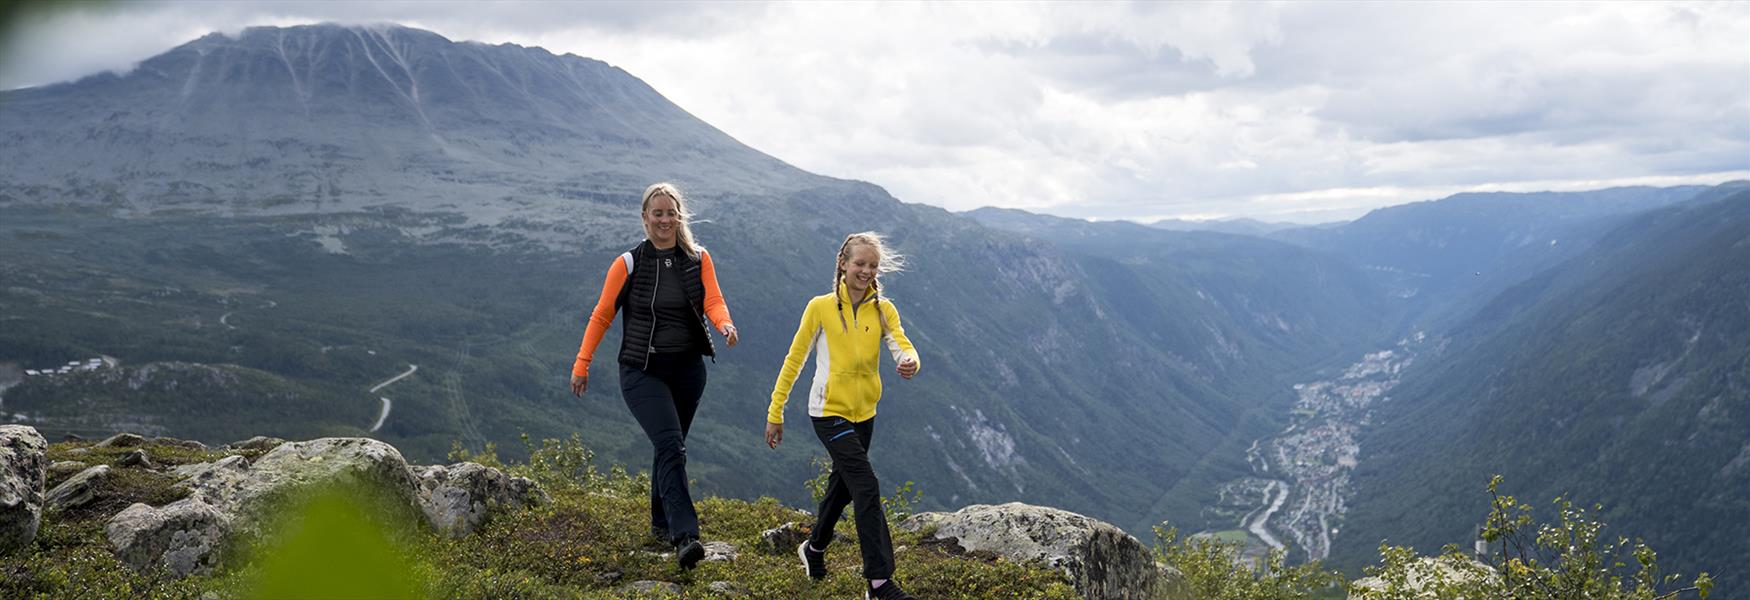 Nyt vandring i fjellheimen i Telemark